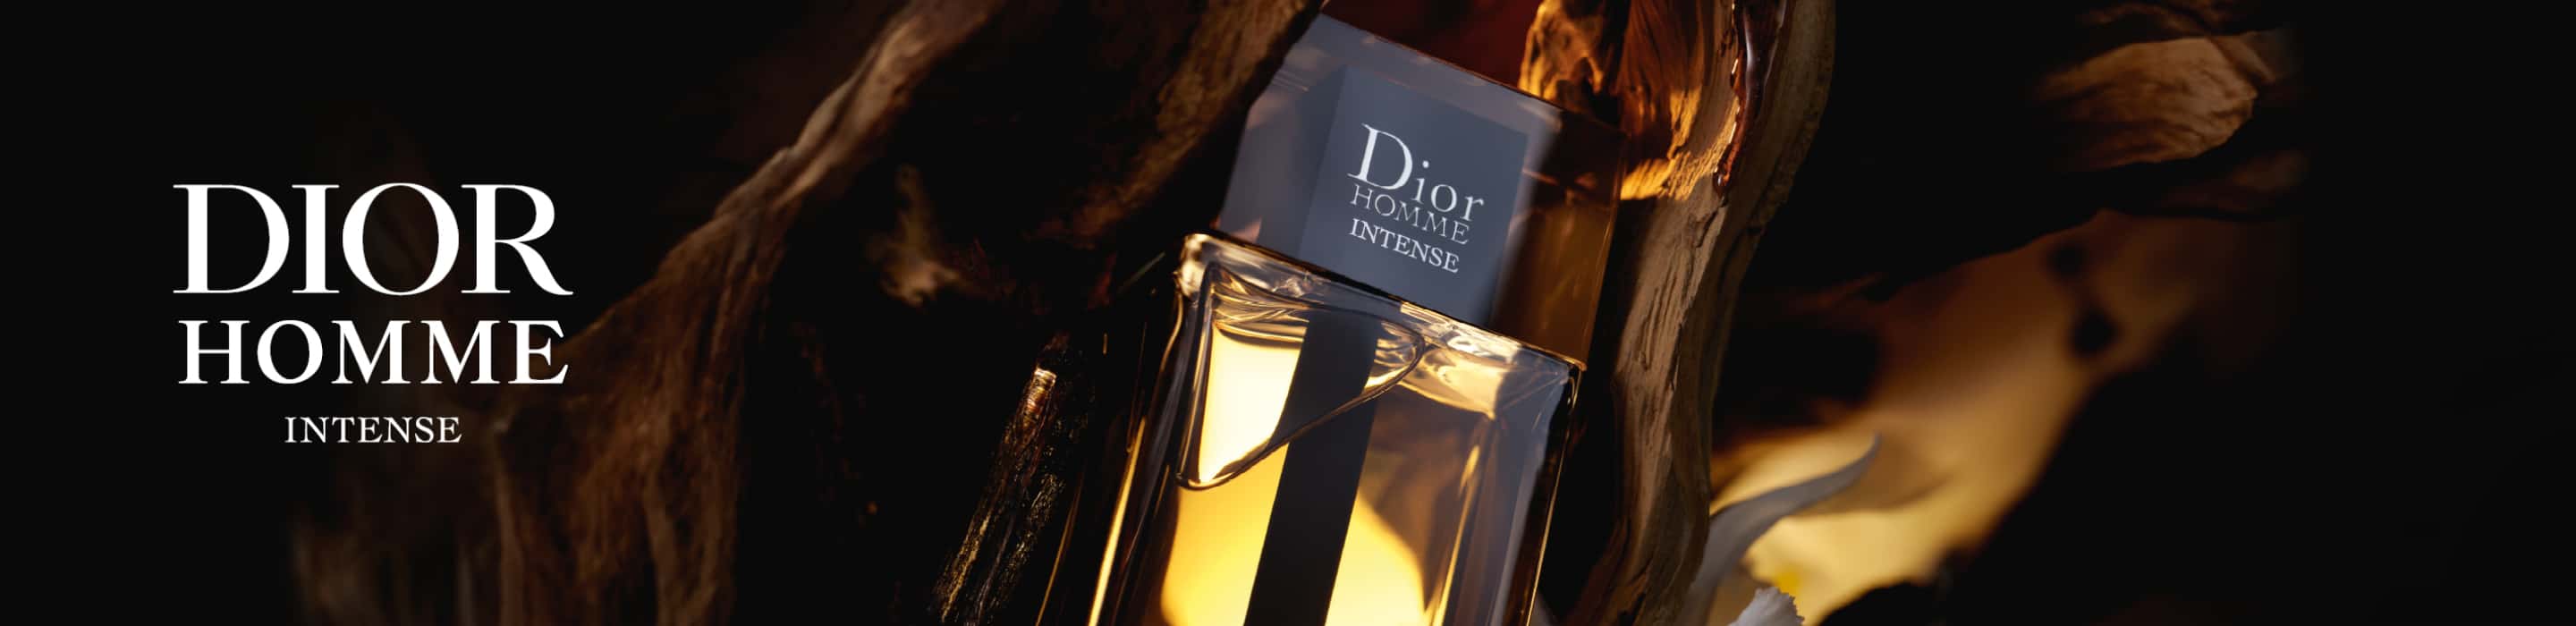 Imagen de botella de perfume dior homme intense de tapa negra y color ambar. DIOR